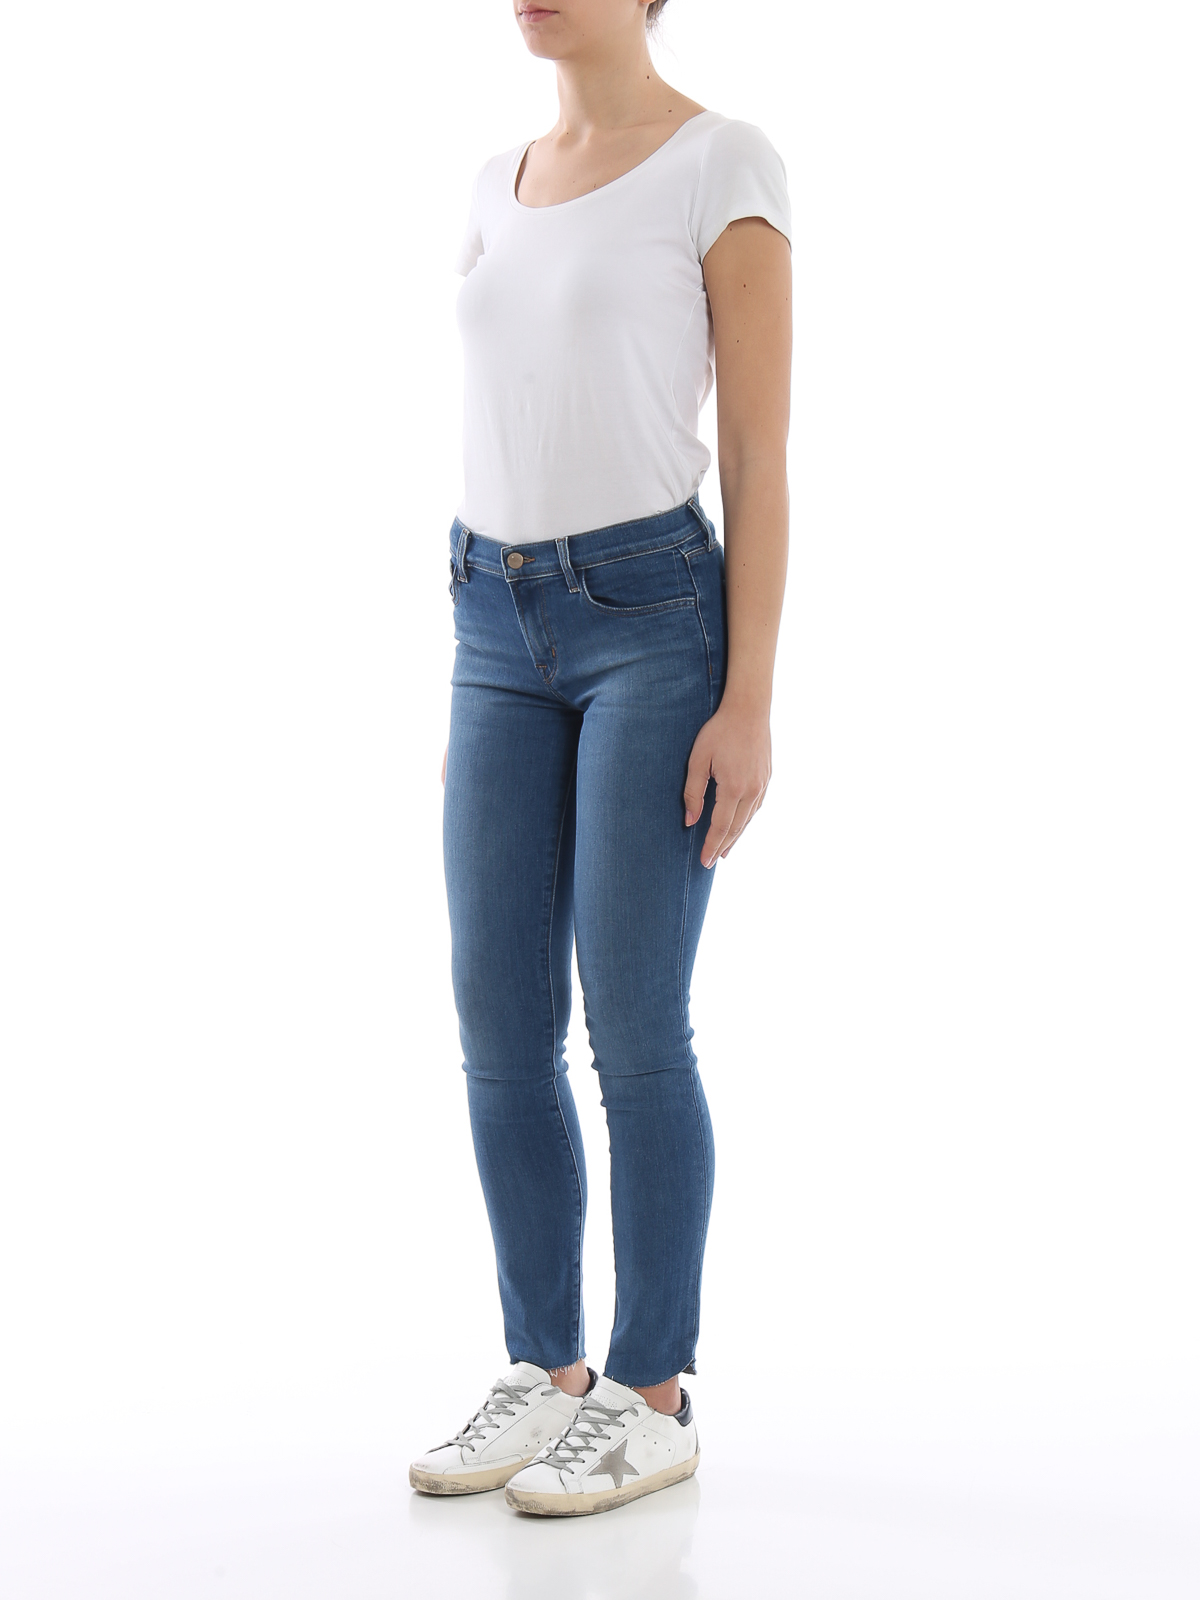 Skinny jeans Brand - 811 skinny - | iKRIX.com